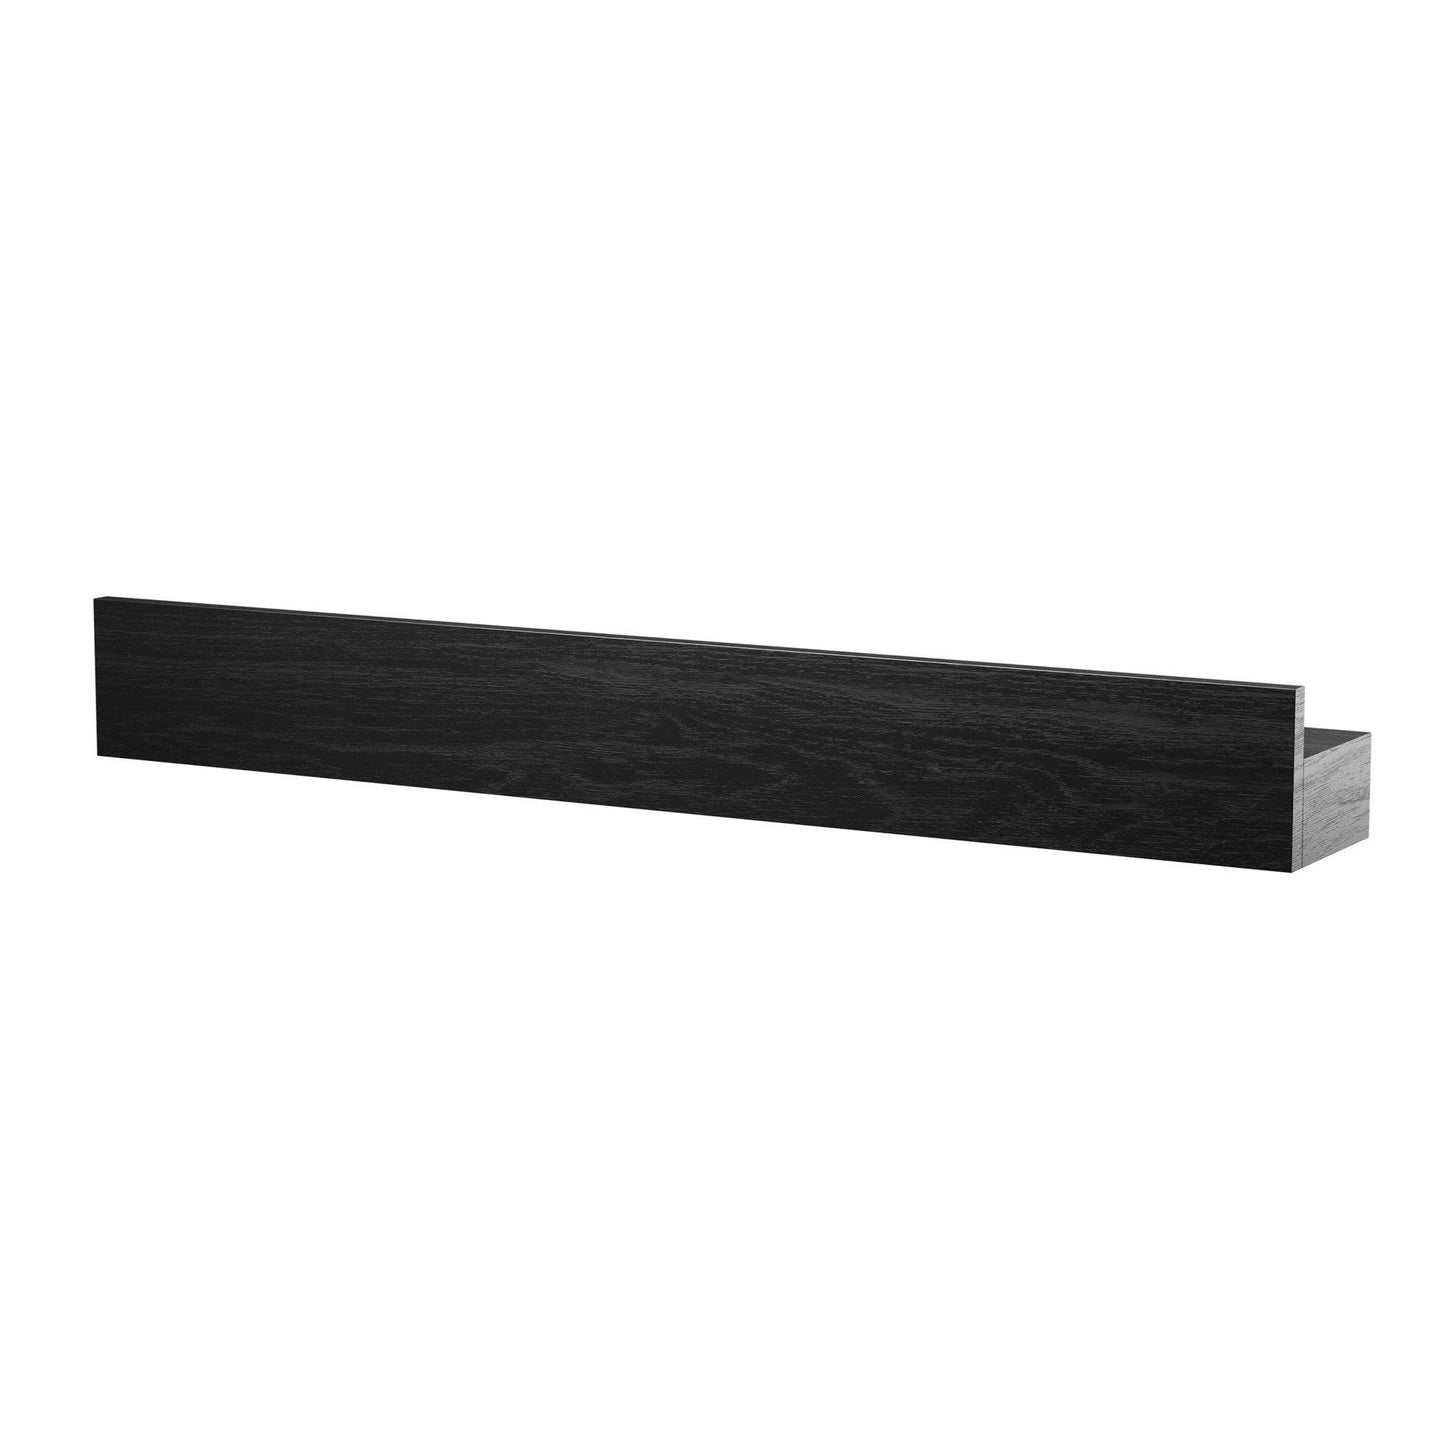 DIMM: By Wirth / EKTA Living hilla · Magnet shelf 40 cm · Svört